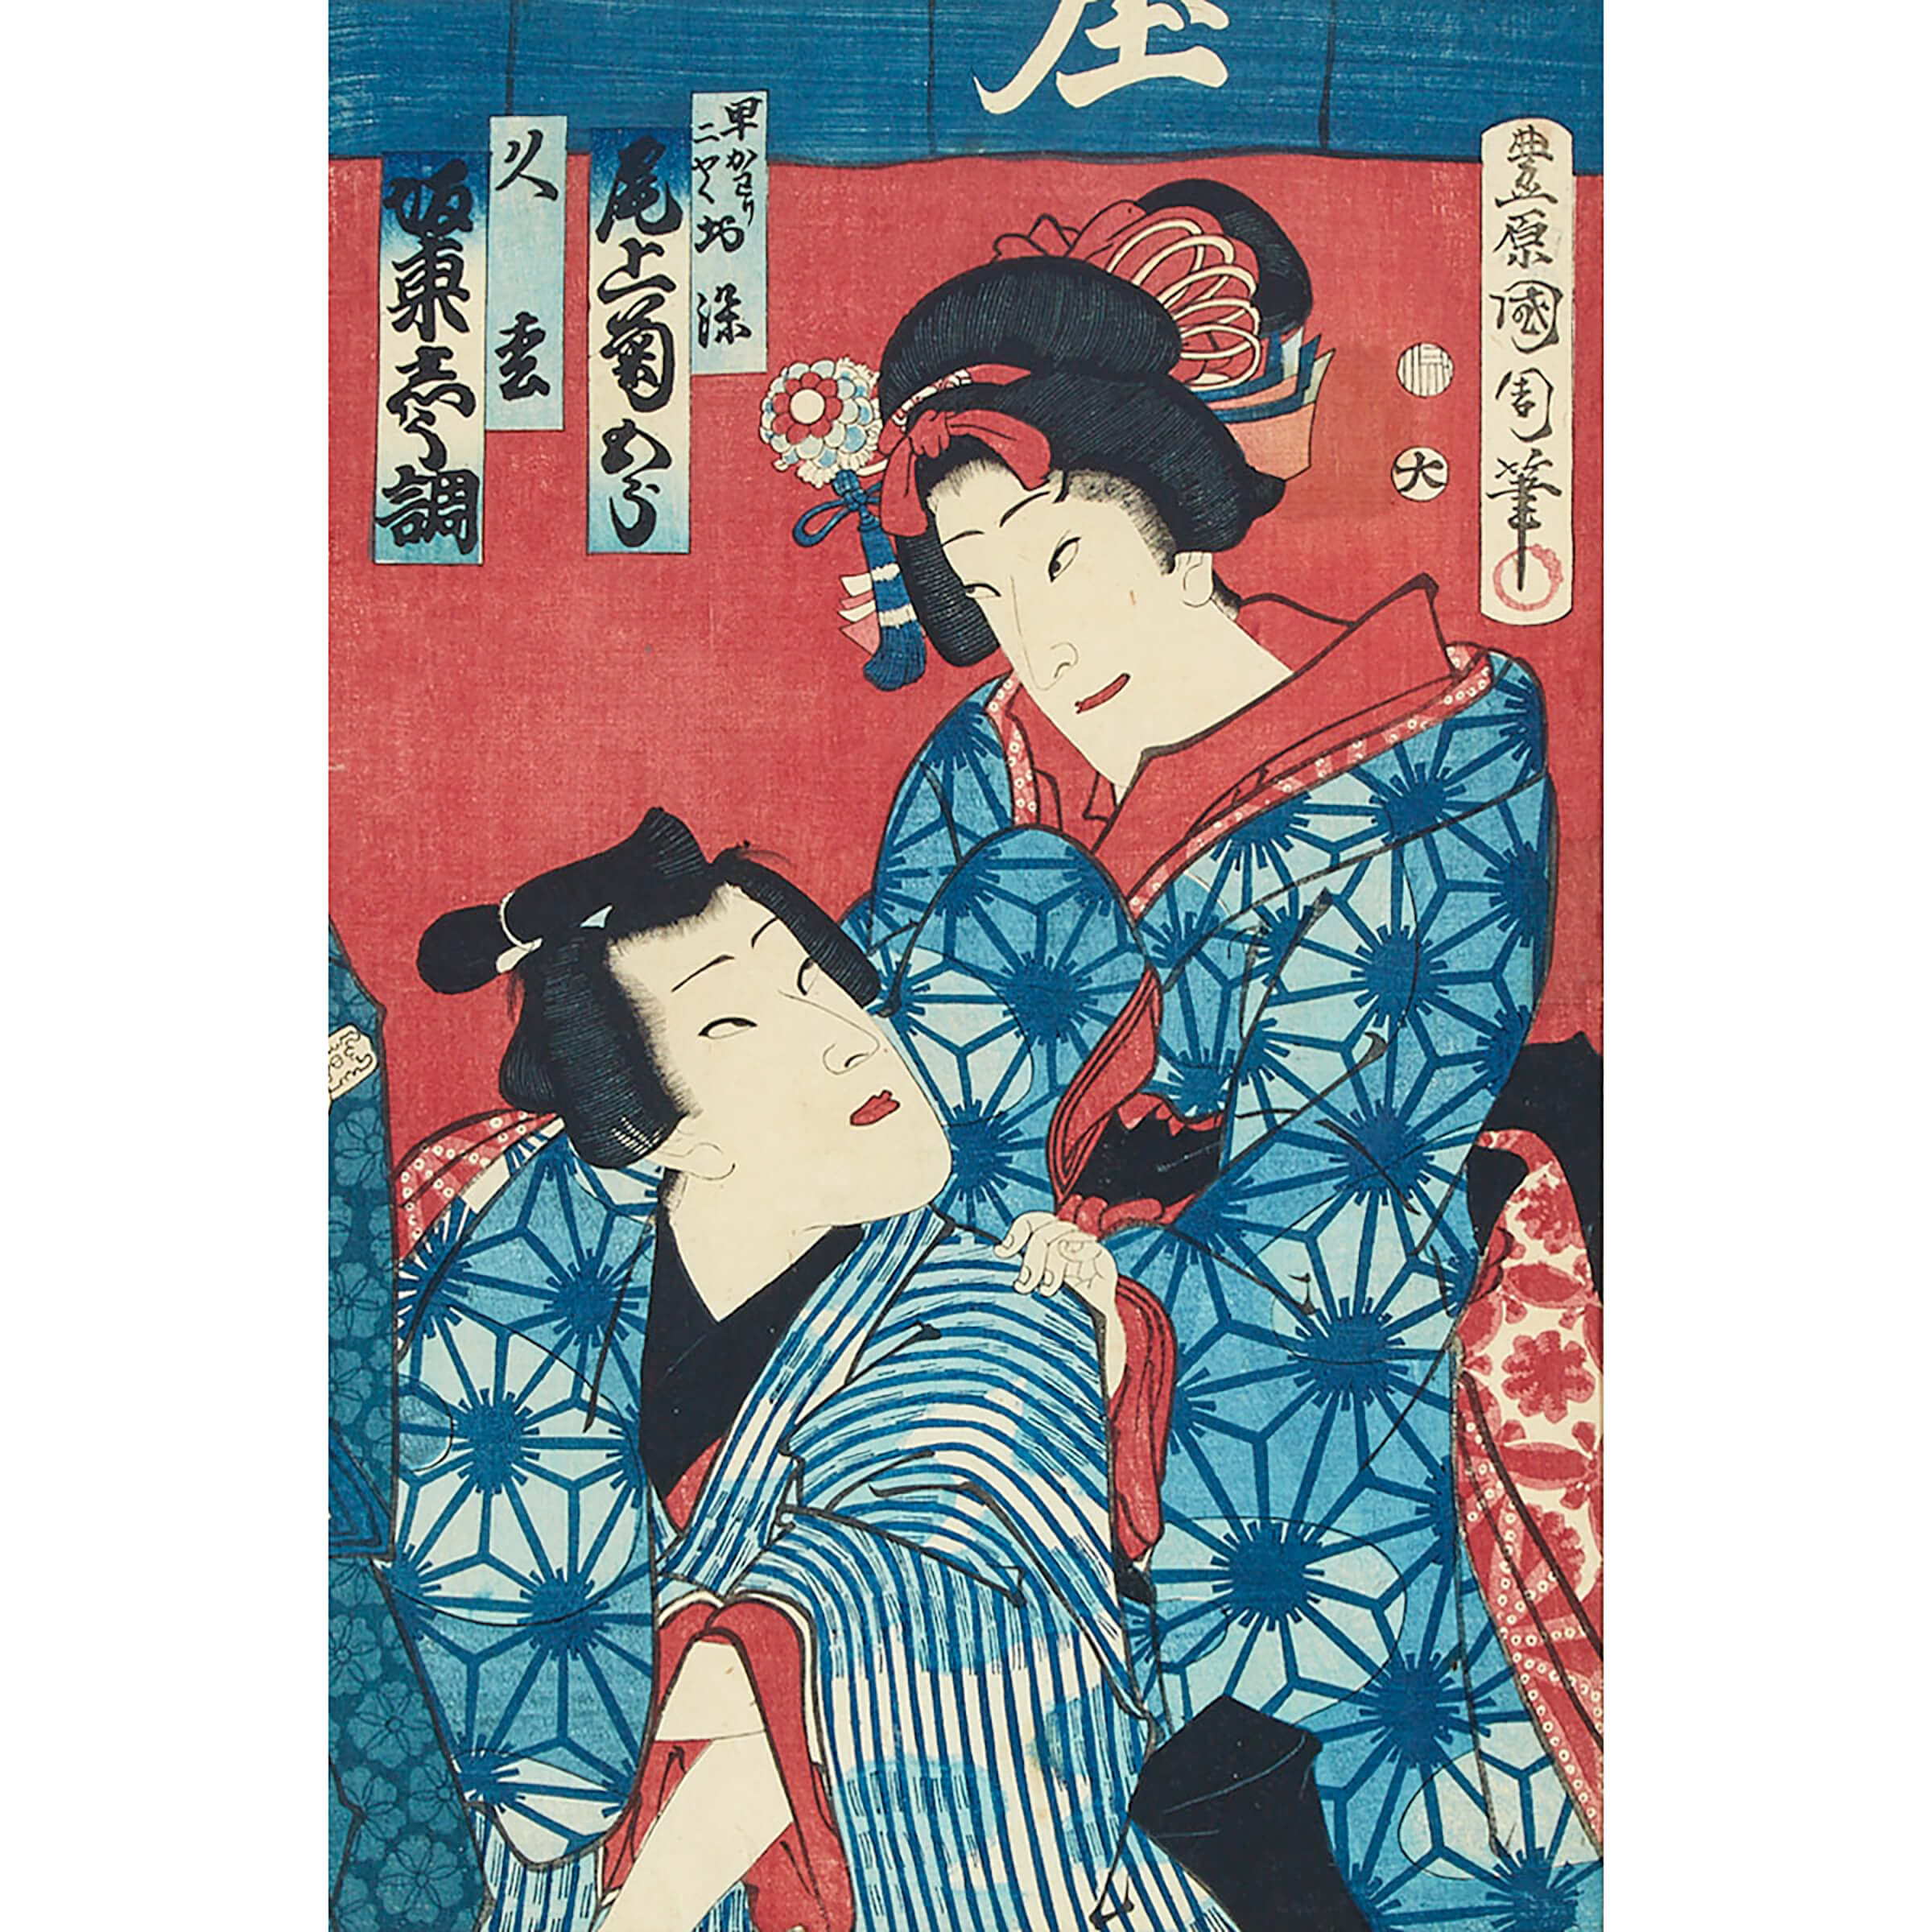 Two Actor Portraits by Toyohara Kunichika (1835-1900) and Utagawa Kunisada (1786-1865)